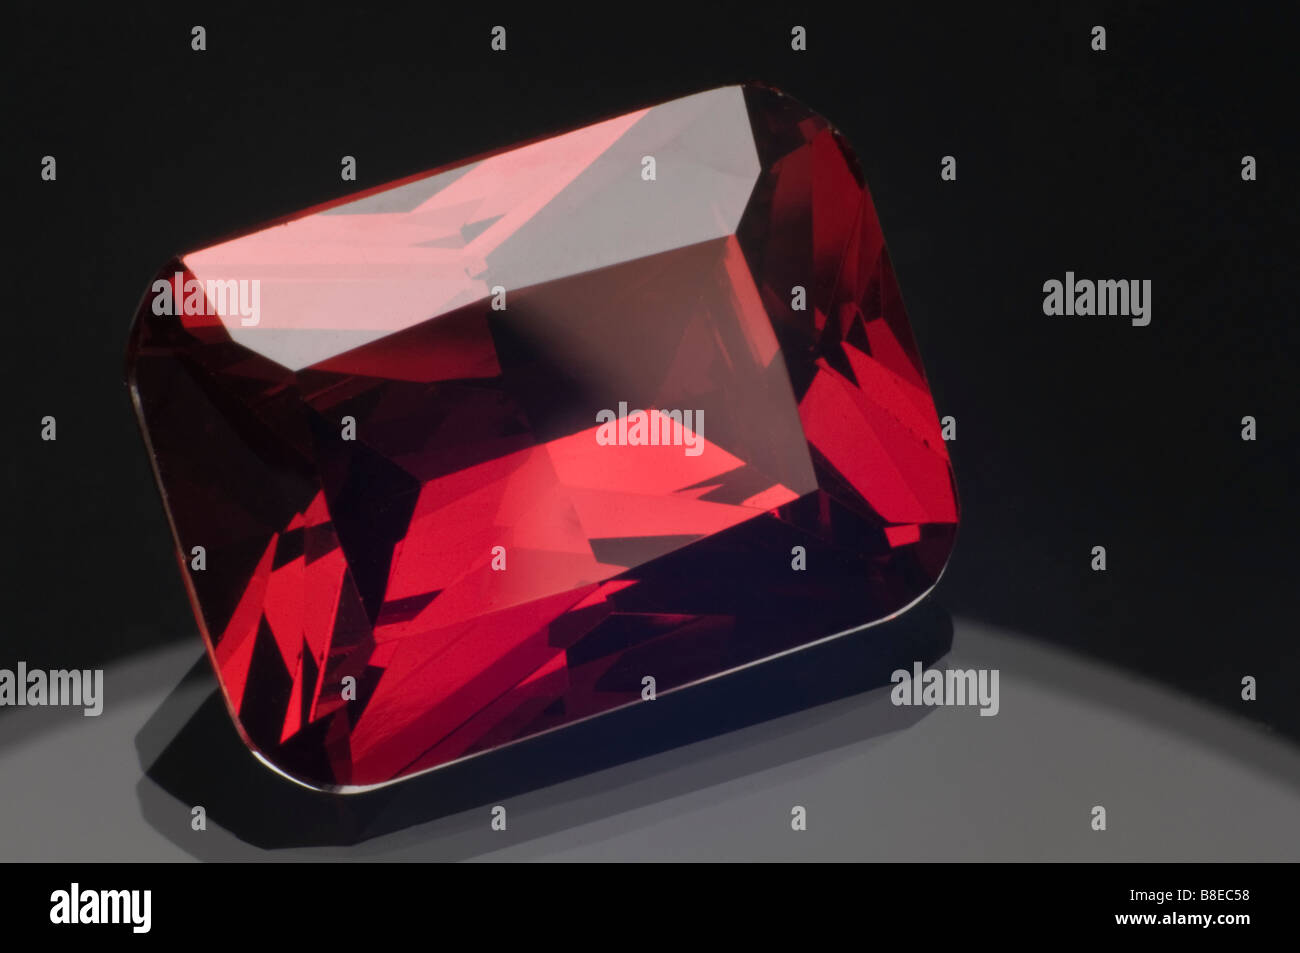 Rubin edelstein -Fotos und -Bildmaterial in hoher Auflösung – Alamy